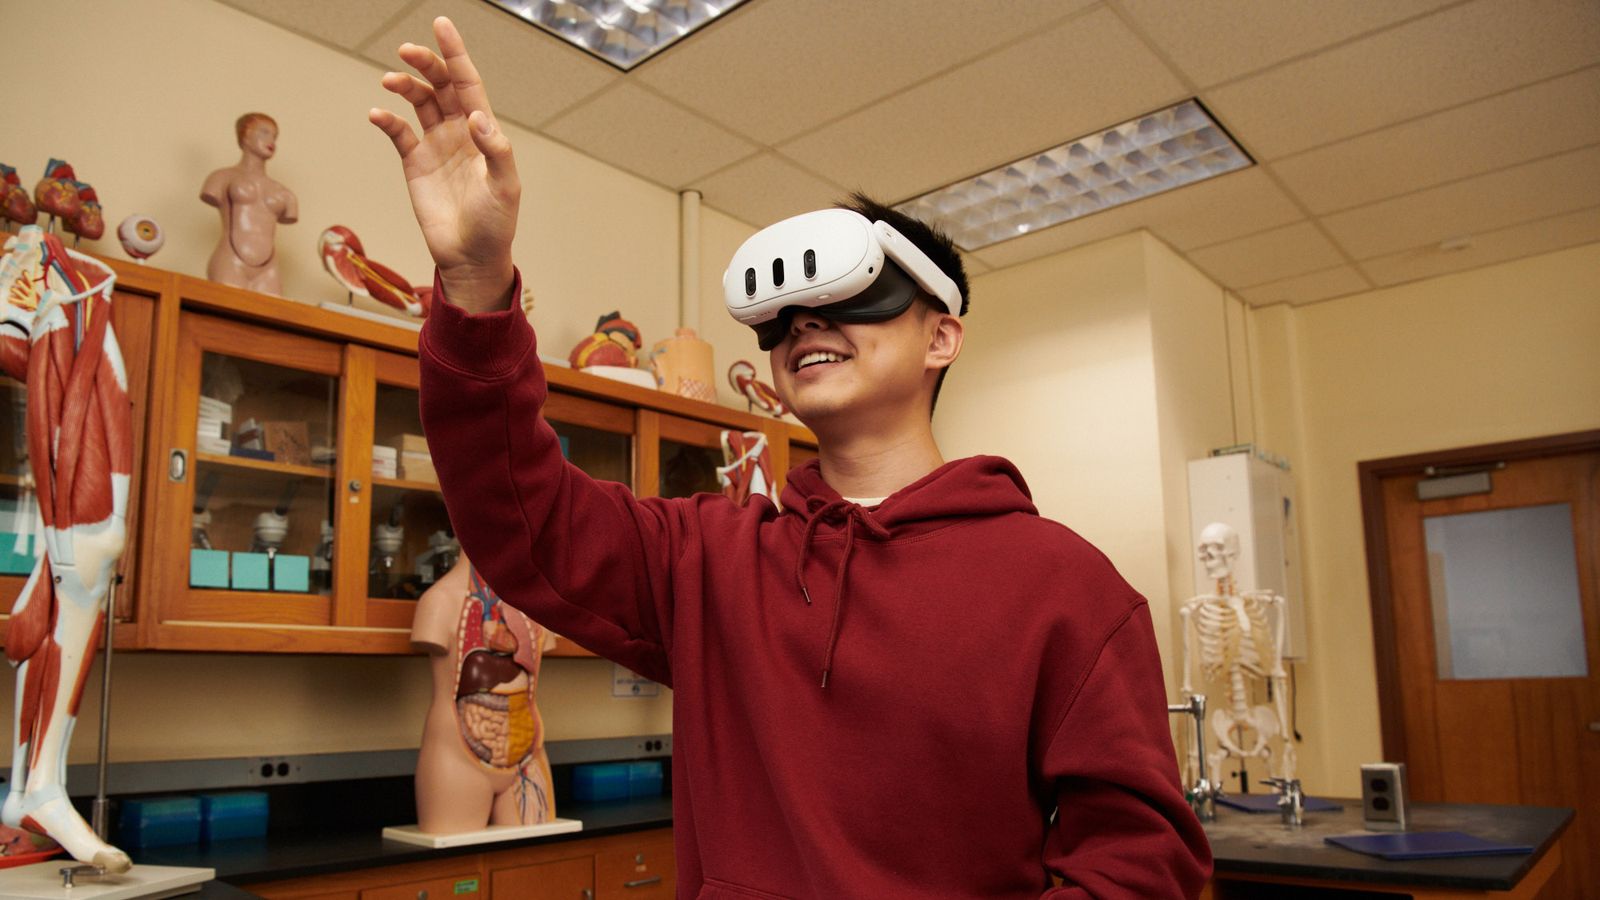 Училищата няма да използват Meta Quest VR, освен ако учителите нямат „пълна видимост и контрол“, казва Ник Клег